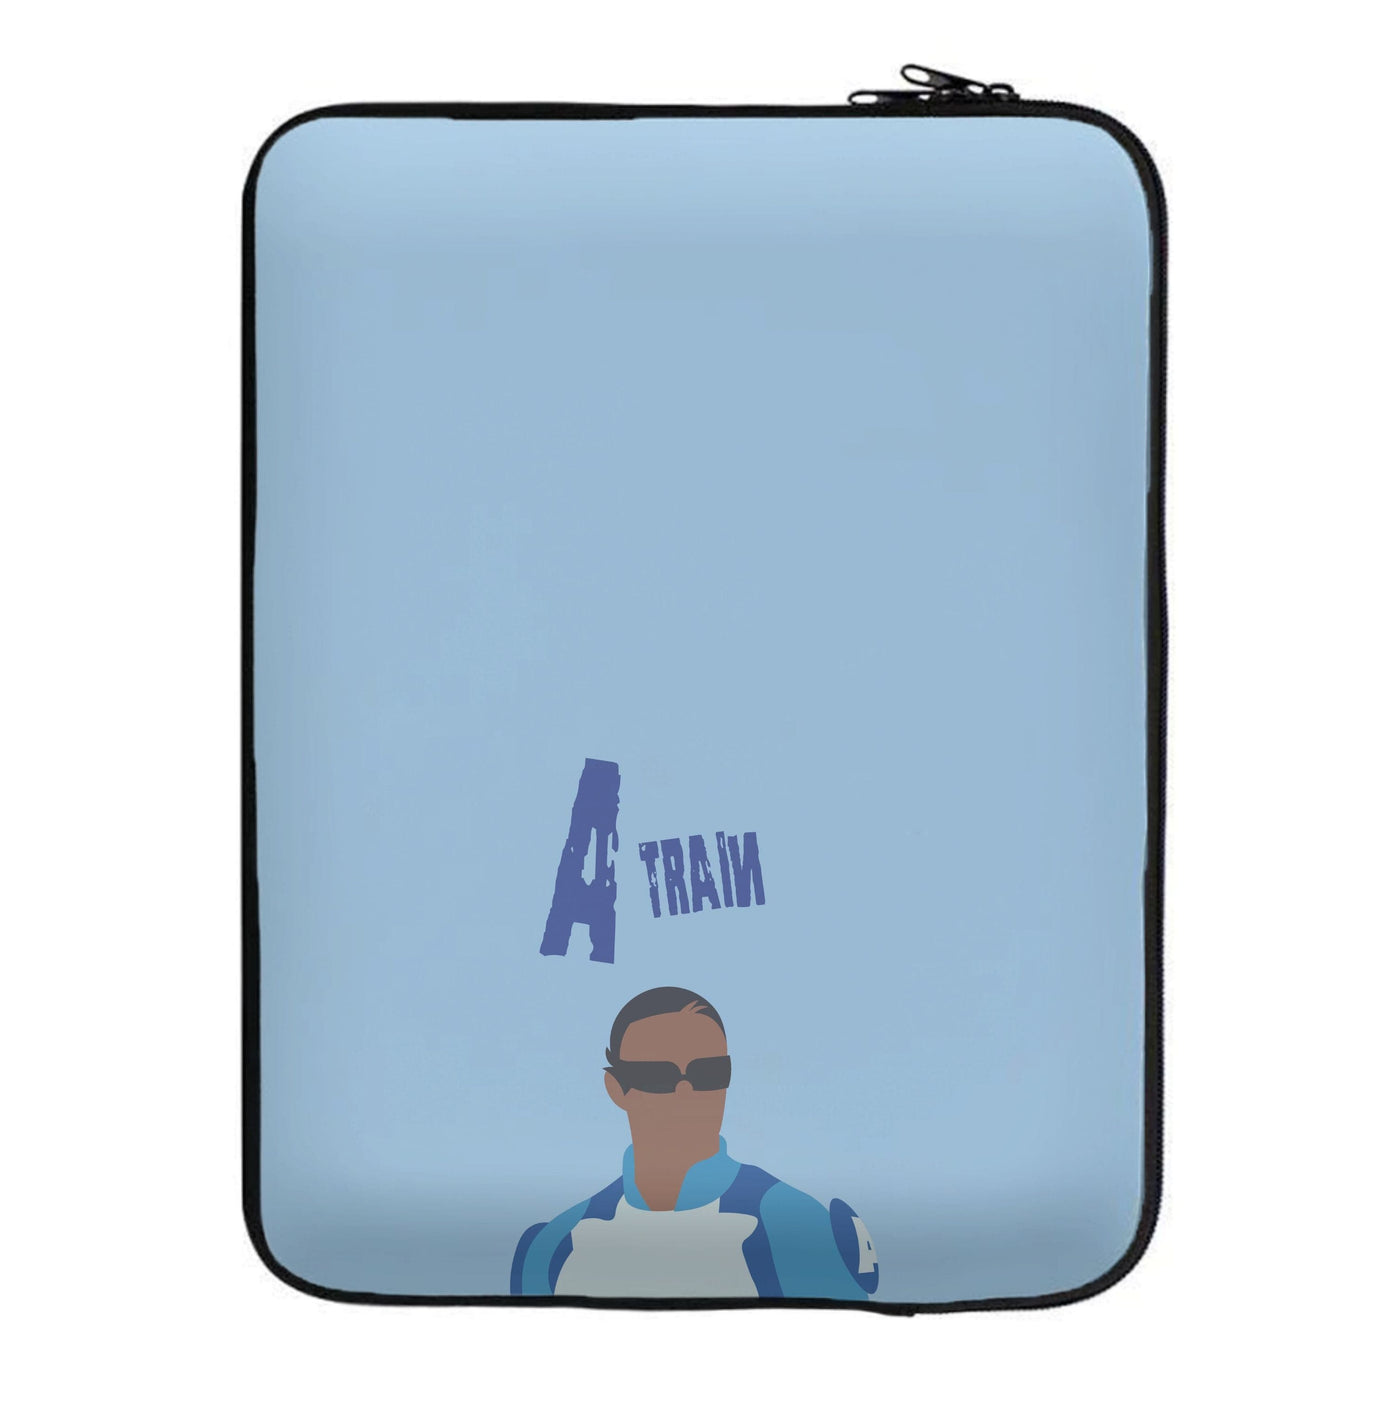 A Train - The Boys Laptop Sleeve